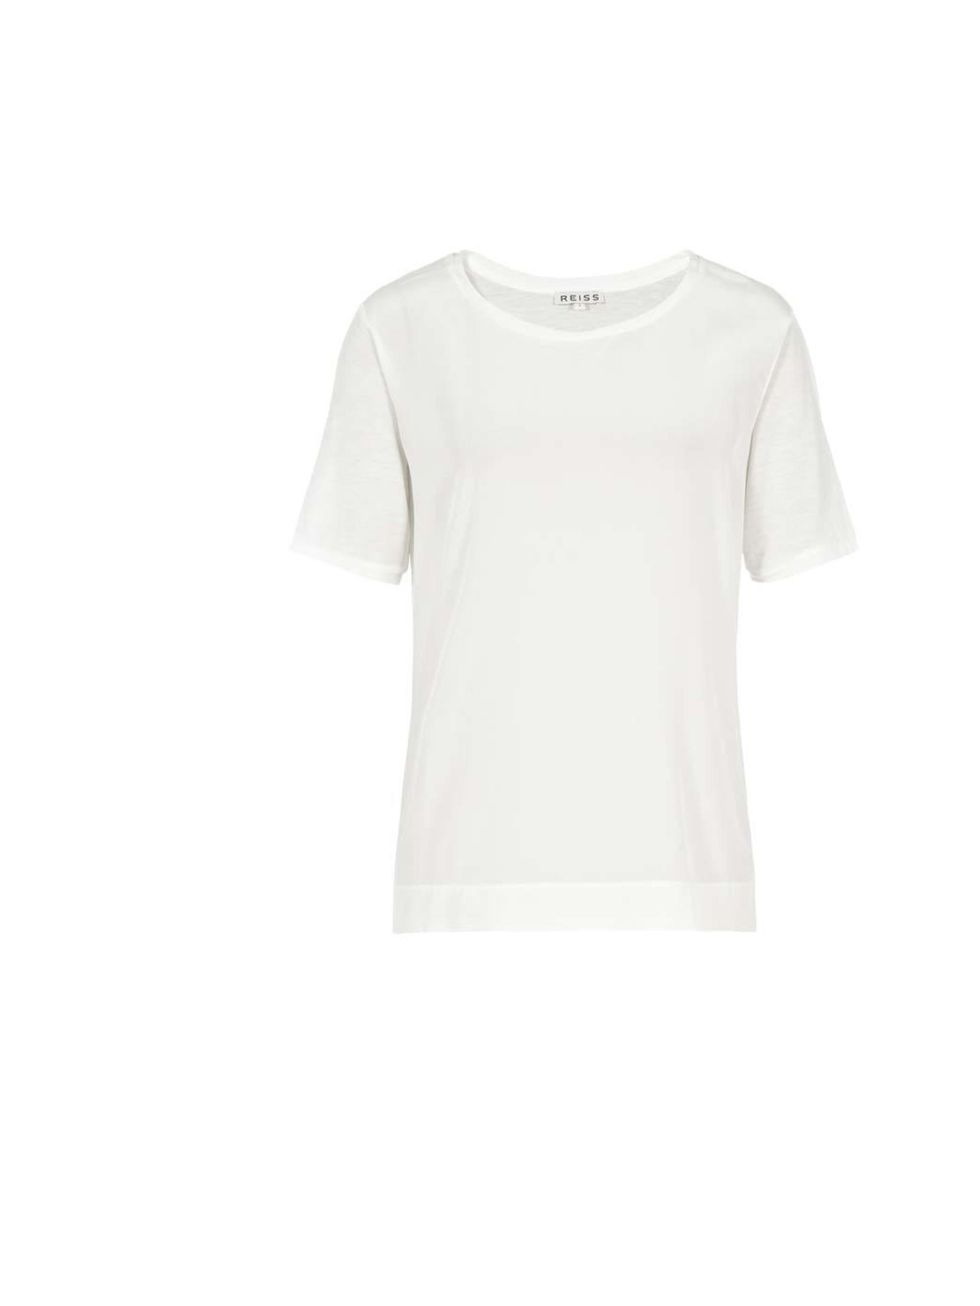 <p>Silk t-shirt £65 <a href="http://www.reiss.com/womens/tops/kami/off-white/">Reiss</a></p>